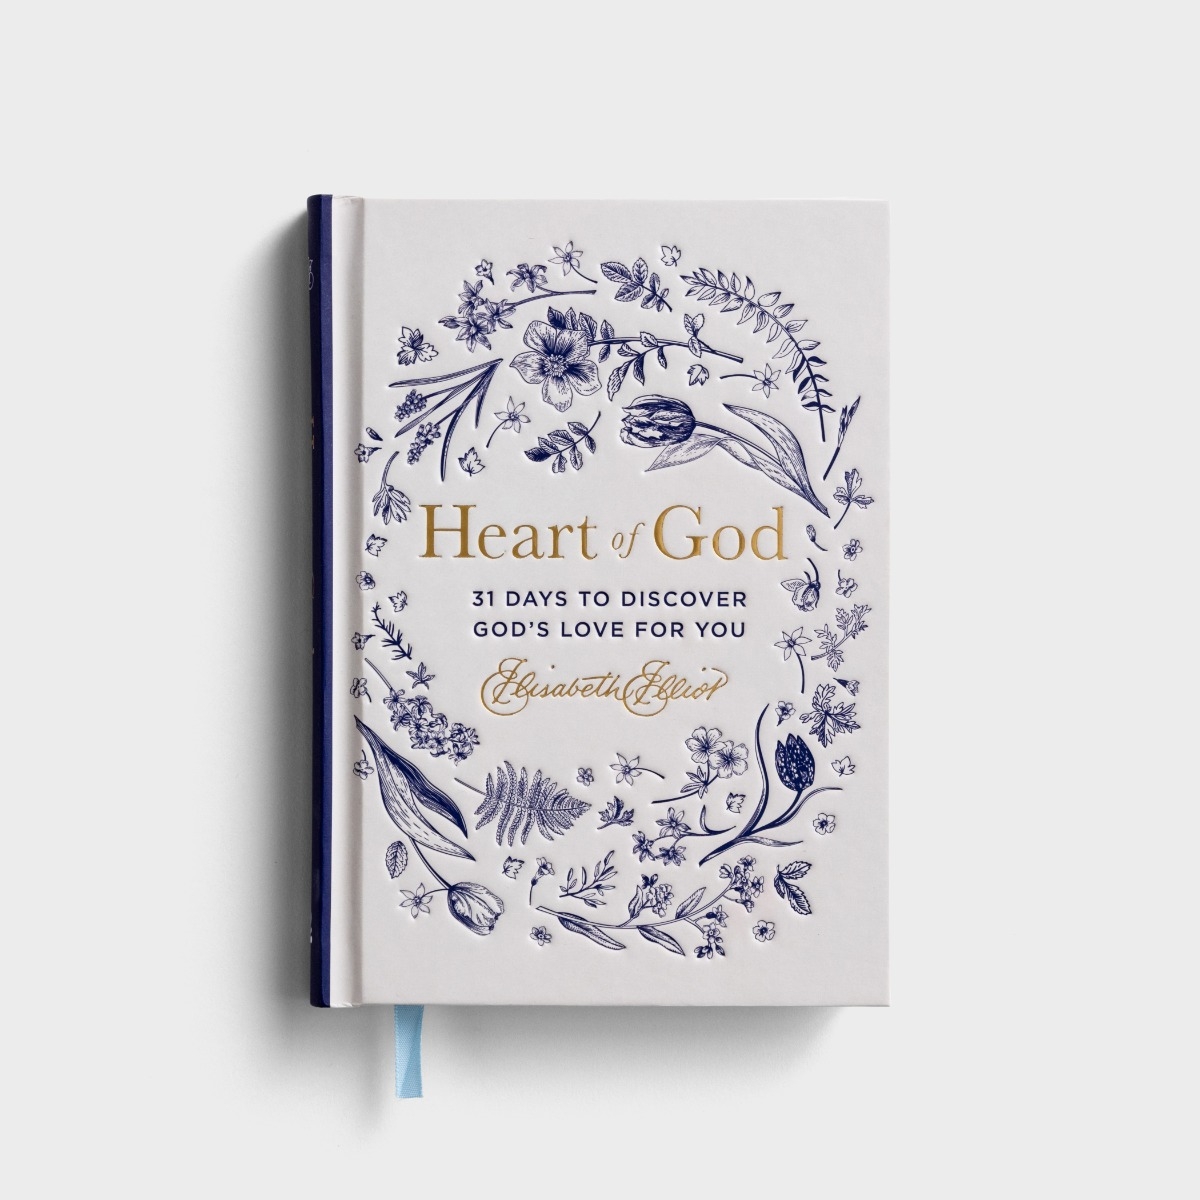 伊丽莎白艾略特-神的心:31天发现神对你的爱